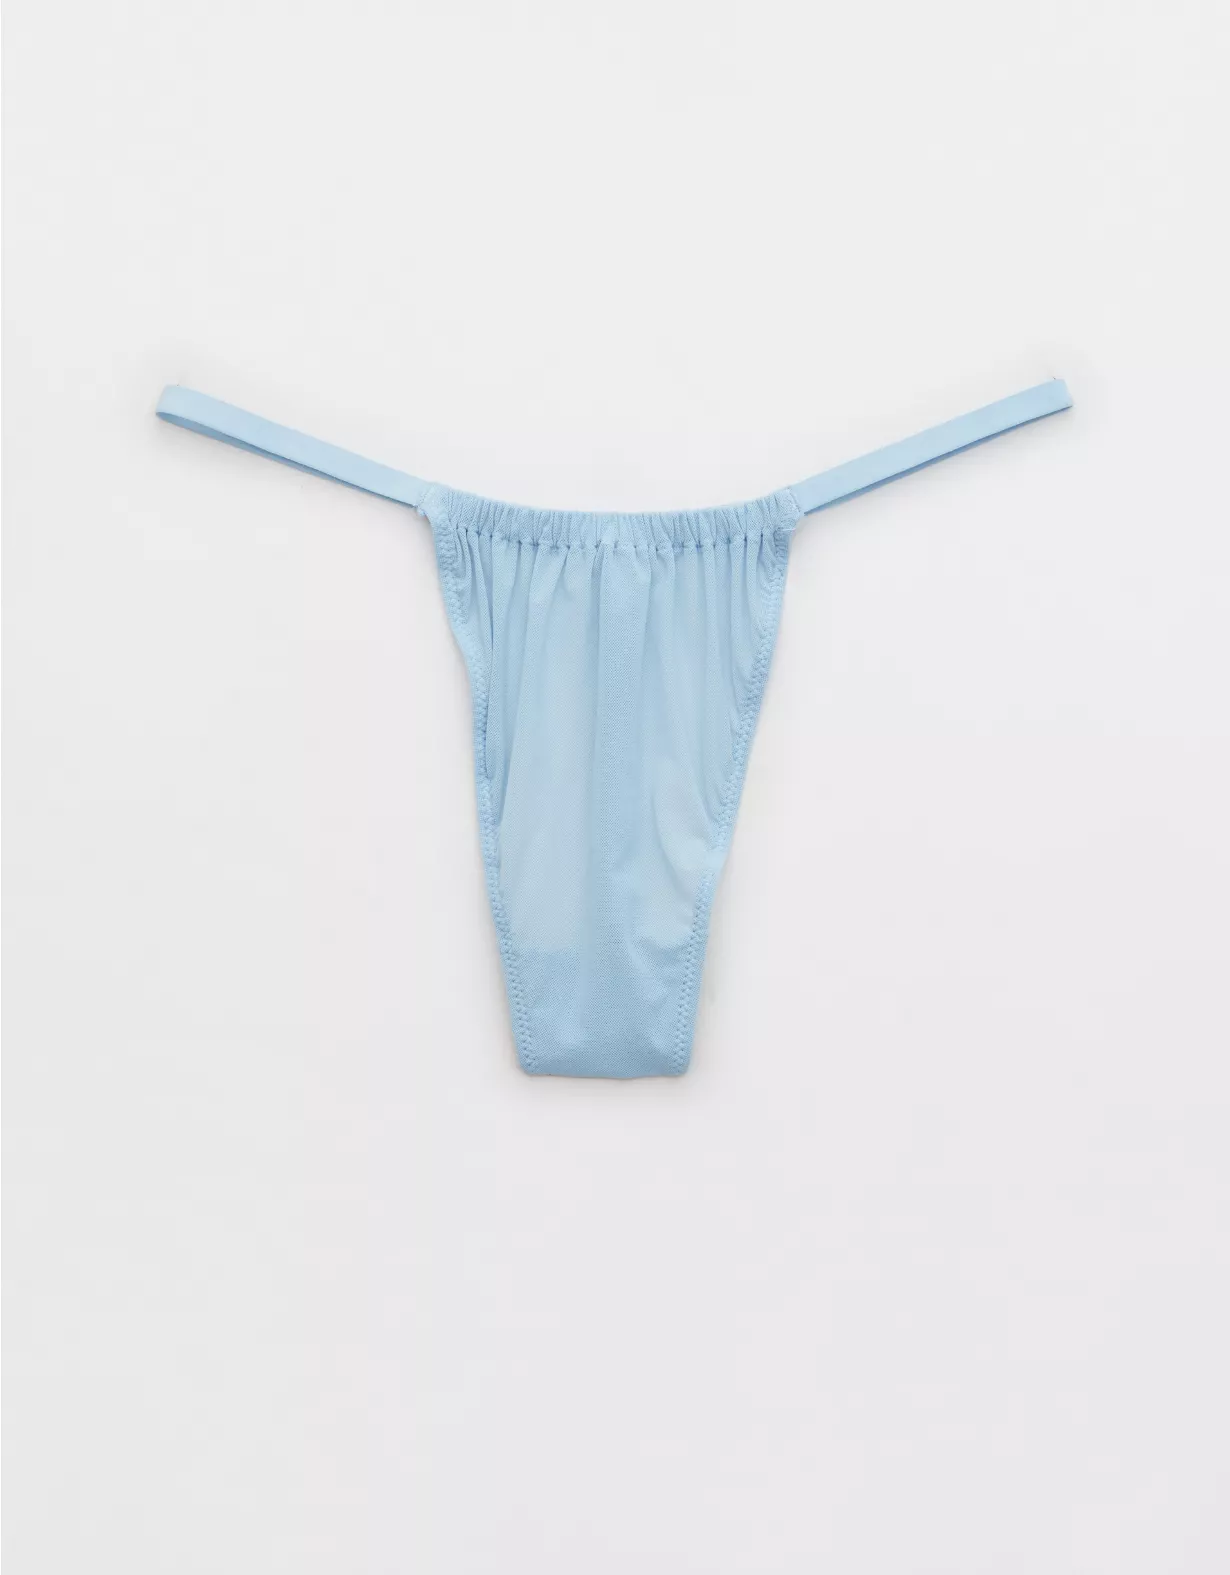 Aerie Mesh Ruched String Thong Underwear